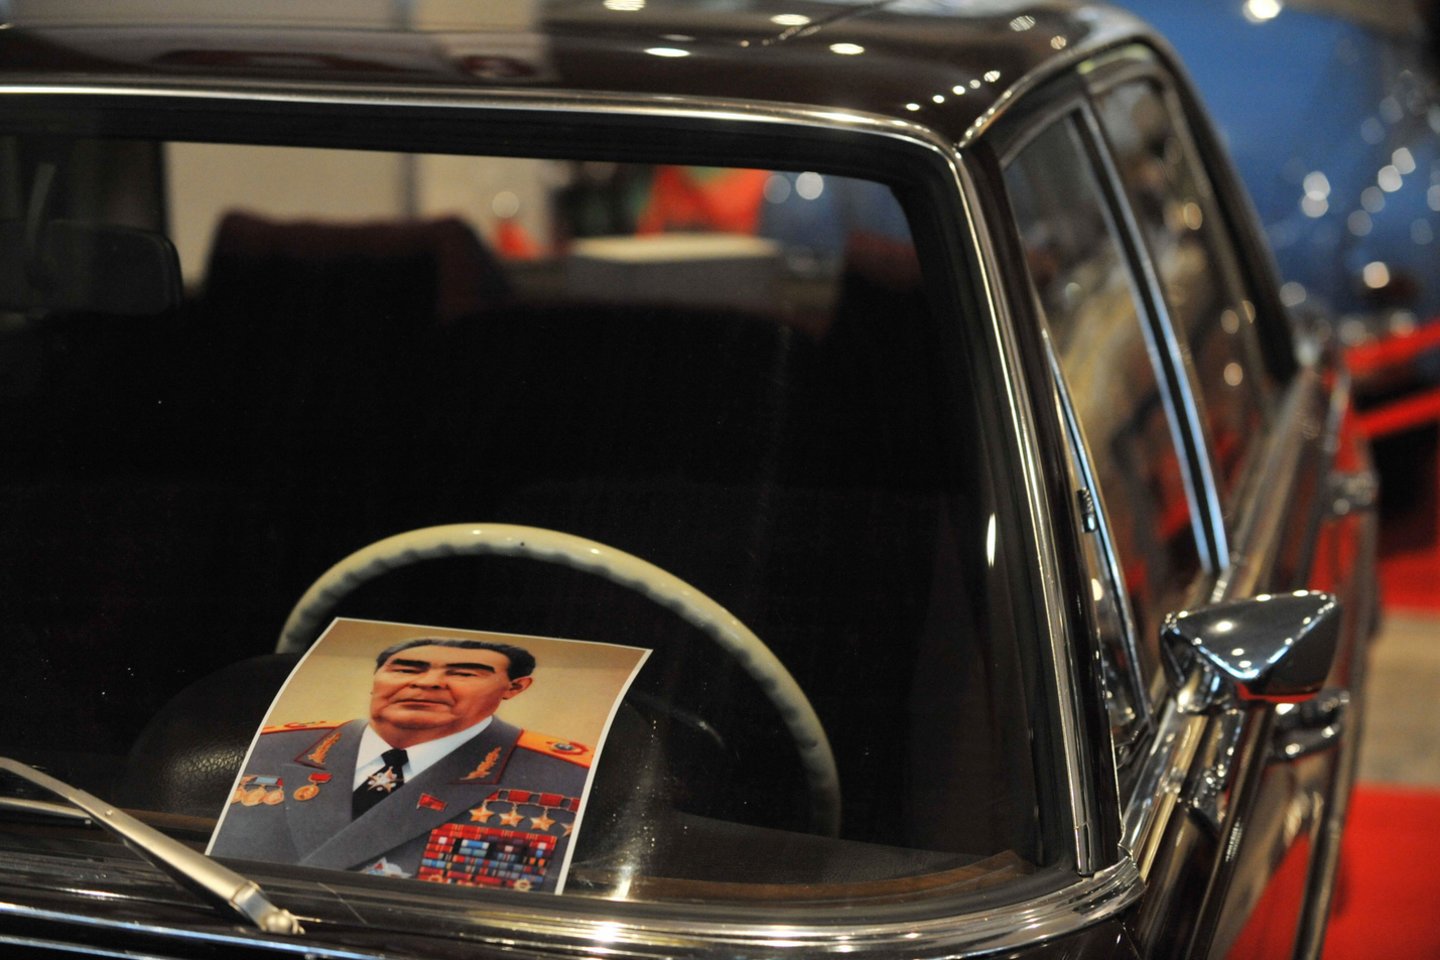 Leonido Brežnevo vairuotojo pažymėjimas aukcione buvo parduotas už 1,55 mln. rublių (23 tūkst. eurų). <br>AFP/Scanpix nuotr.